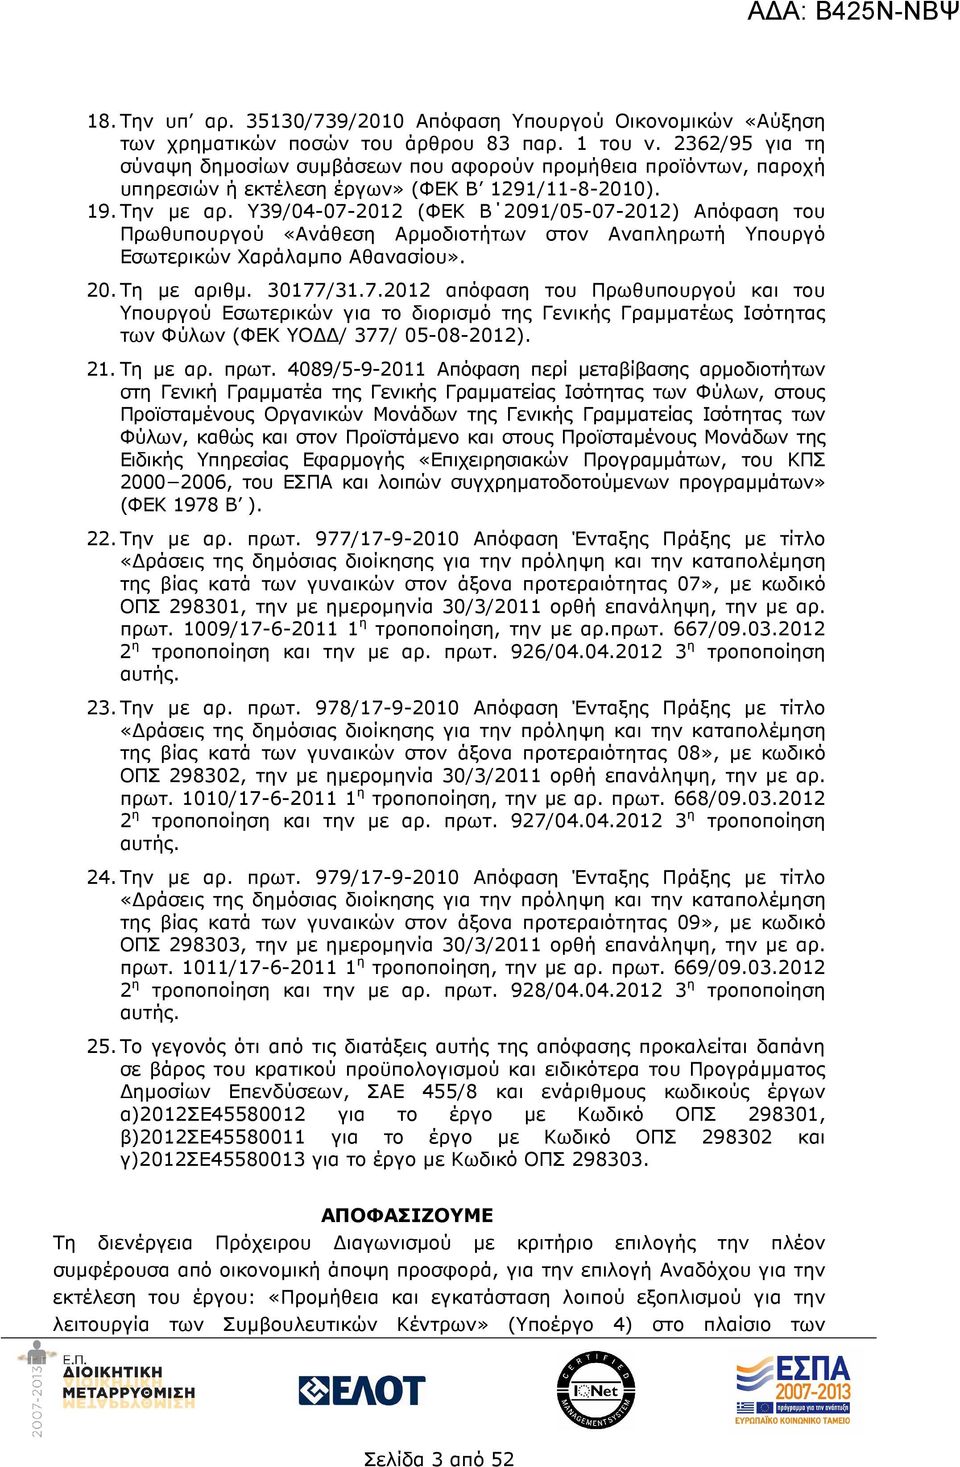 Υ39/04-07-2012 (ΦΕΚ Β 2091/05-07-2012) Απόφαση του Πρωθυπουργού «Ανάθεση Αρµοδιοτήτων στον Αναπληρωτή Υπουργό Εσωτερικών Χαράλαµπο Αθανασίου». 20. Τη µε αριθµ. 30177/31.7.2012 απόφαση του Πρωθυπουργού και του Υπουργού Εσωτερικών για το διορισµό της Γενικής Γραµµατέως Ισότητας των Φύλων (ΦΕΚ ΥΟ / 377/ 05-08-2012).